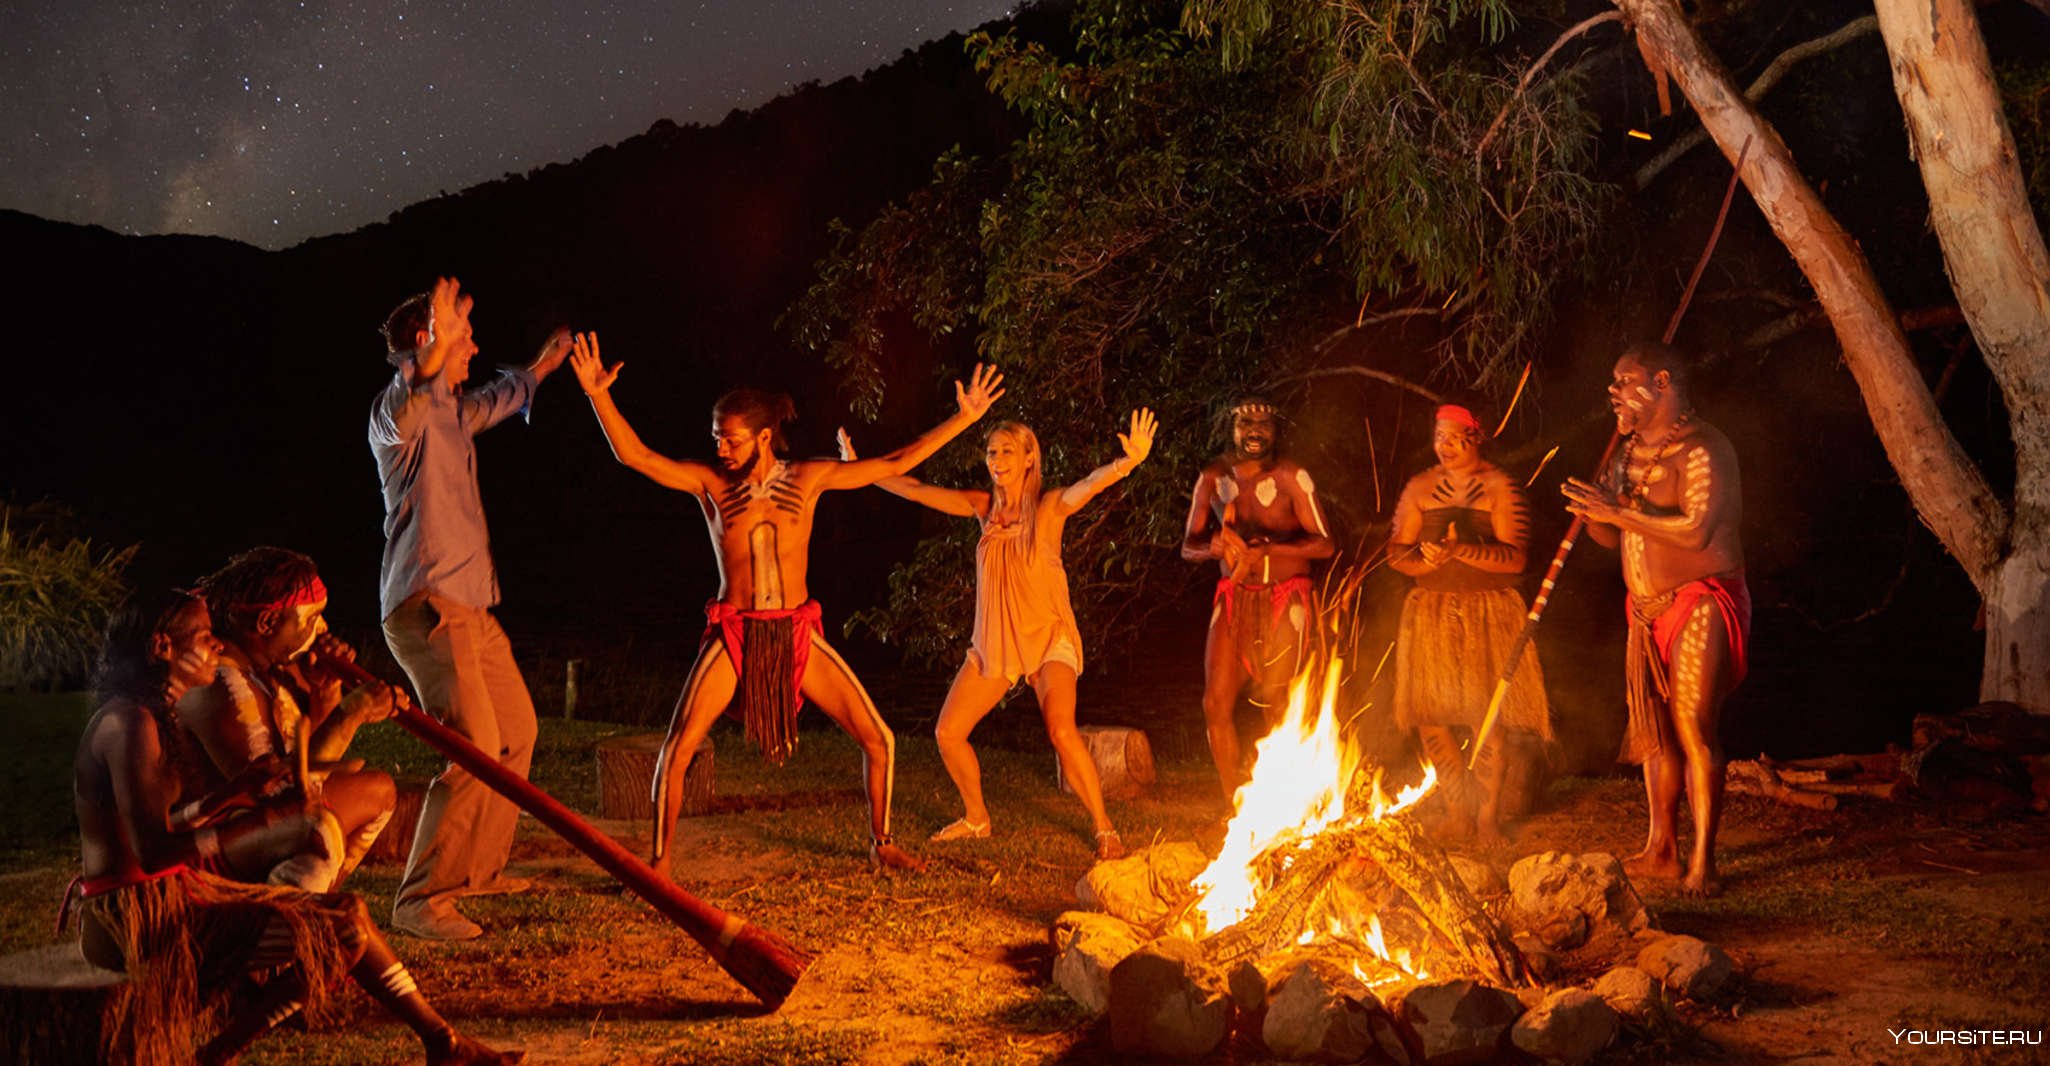 Ритуальные танцы мужчин племени. Бушмены Австралии. Corroboree в театре Австралии. Танцы у костра. Аборигены вокруг костра.